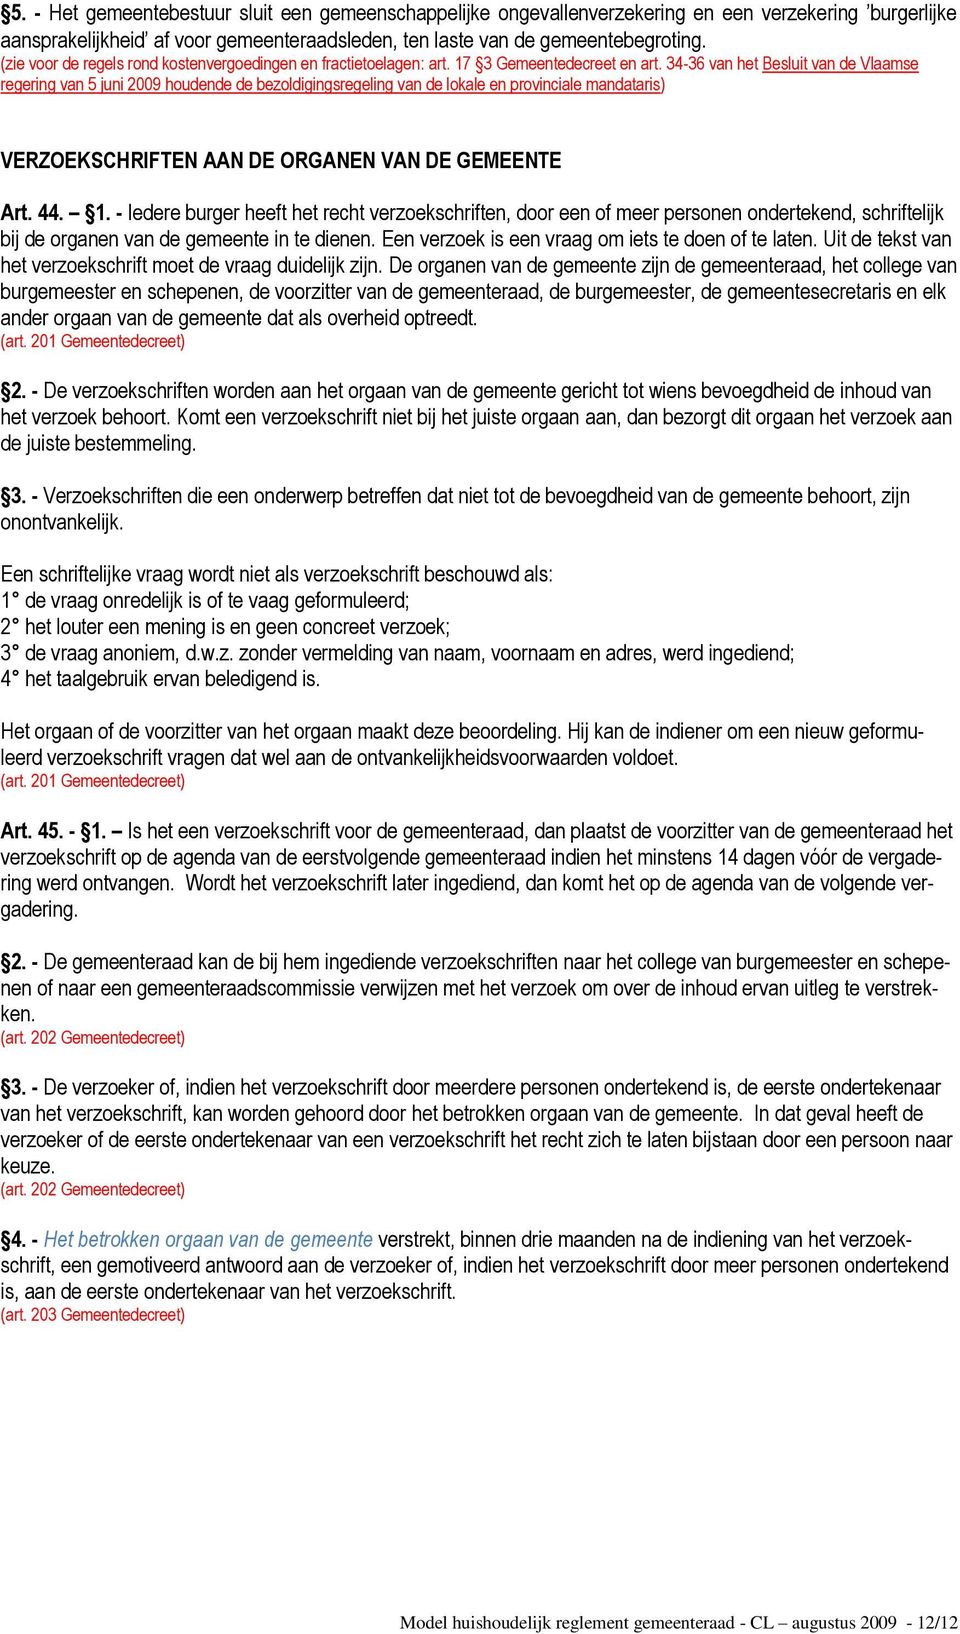 34-36 van het Besluit van de Vlaamse regering van 5 juni 2009 houdende de bezoldigingsregeling van de lokale en provinciale mandataris) VERZOEKSCHRIFTEN AAN DE ORGANEN VAN DE GEMEENTE Art. 44. 1.